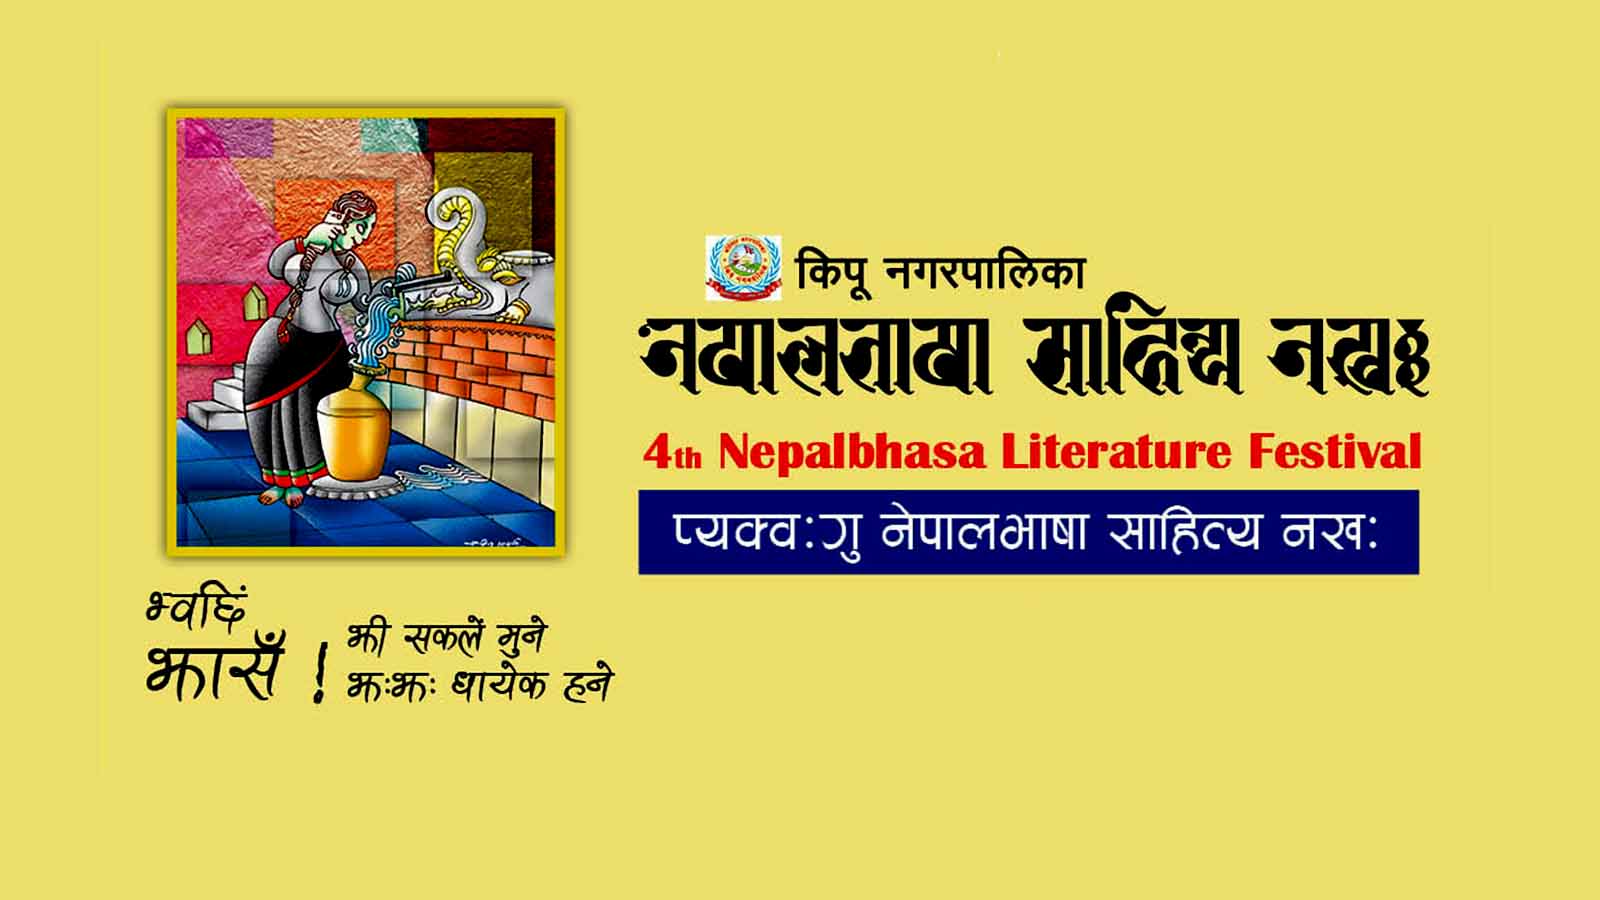 नेपालभाषा साहित्य महोत्सवको चौथो संस्करण कीर्तिपुरमा हुने